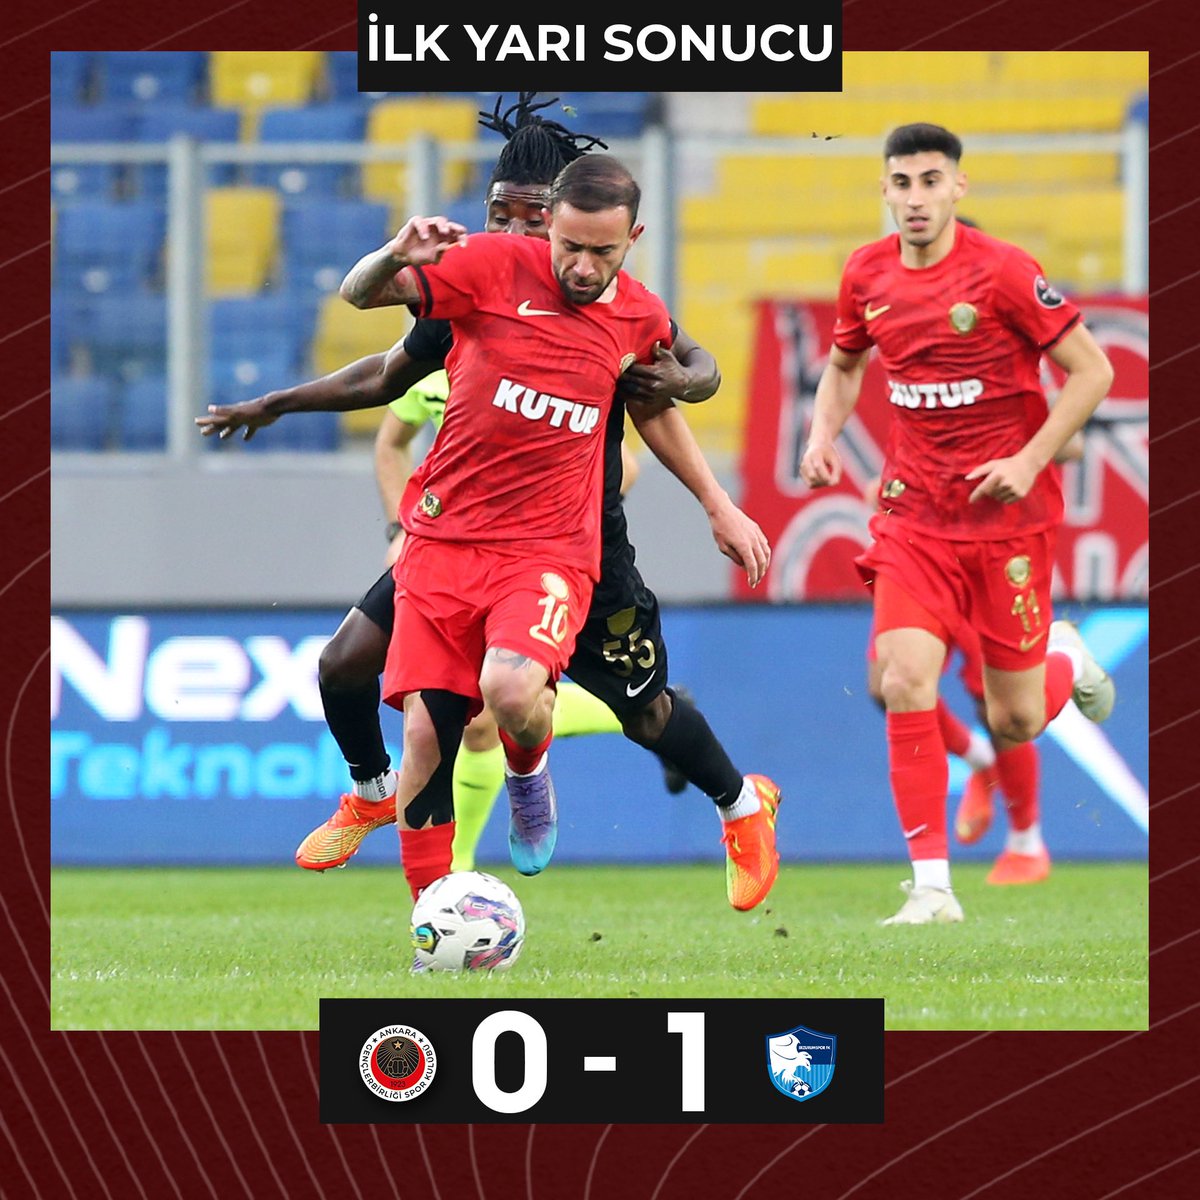 İlk yarı sonucu.

Gençlerbirliği 0 - 1 Erzurumspor FK

#GBvERZ